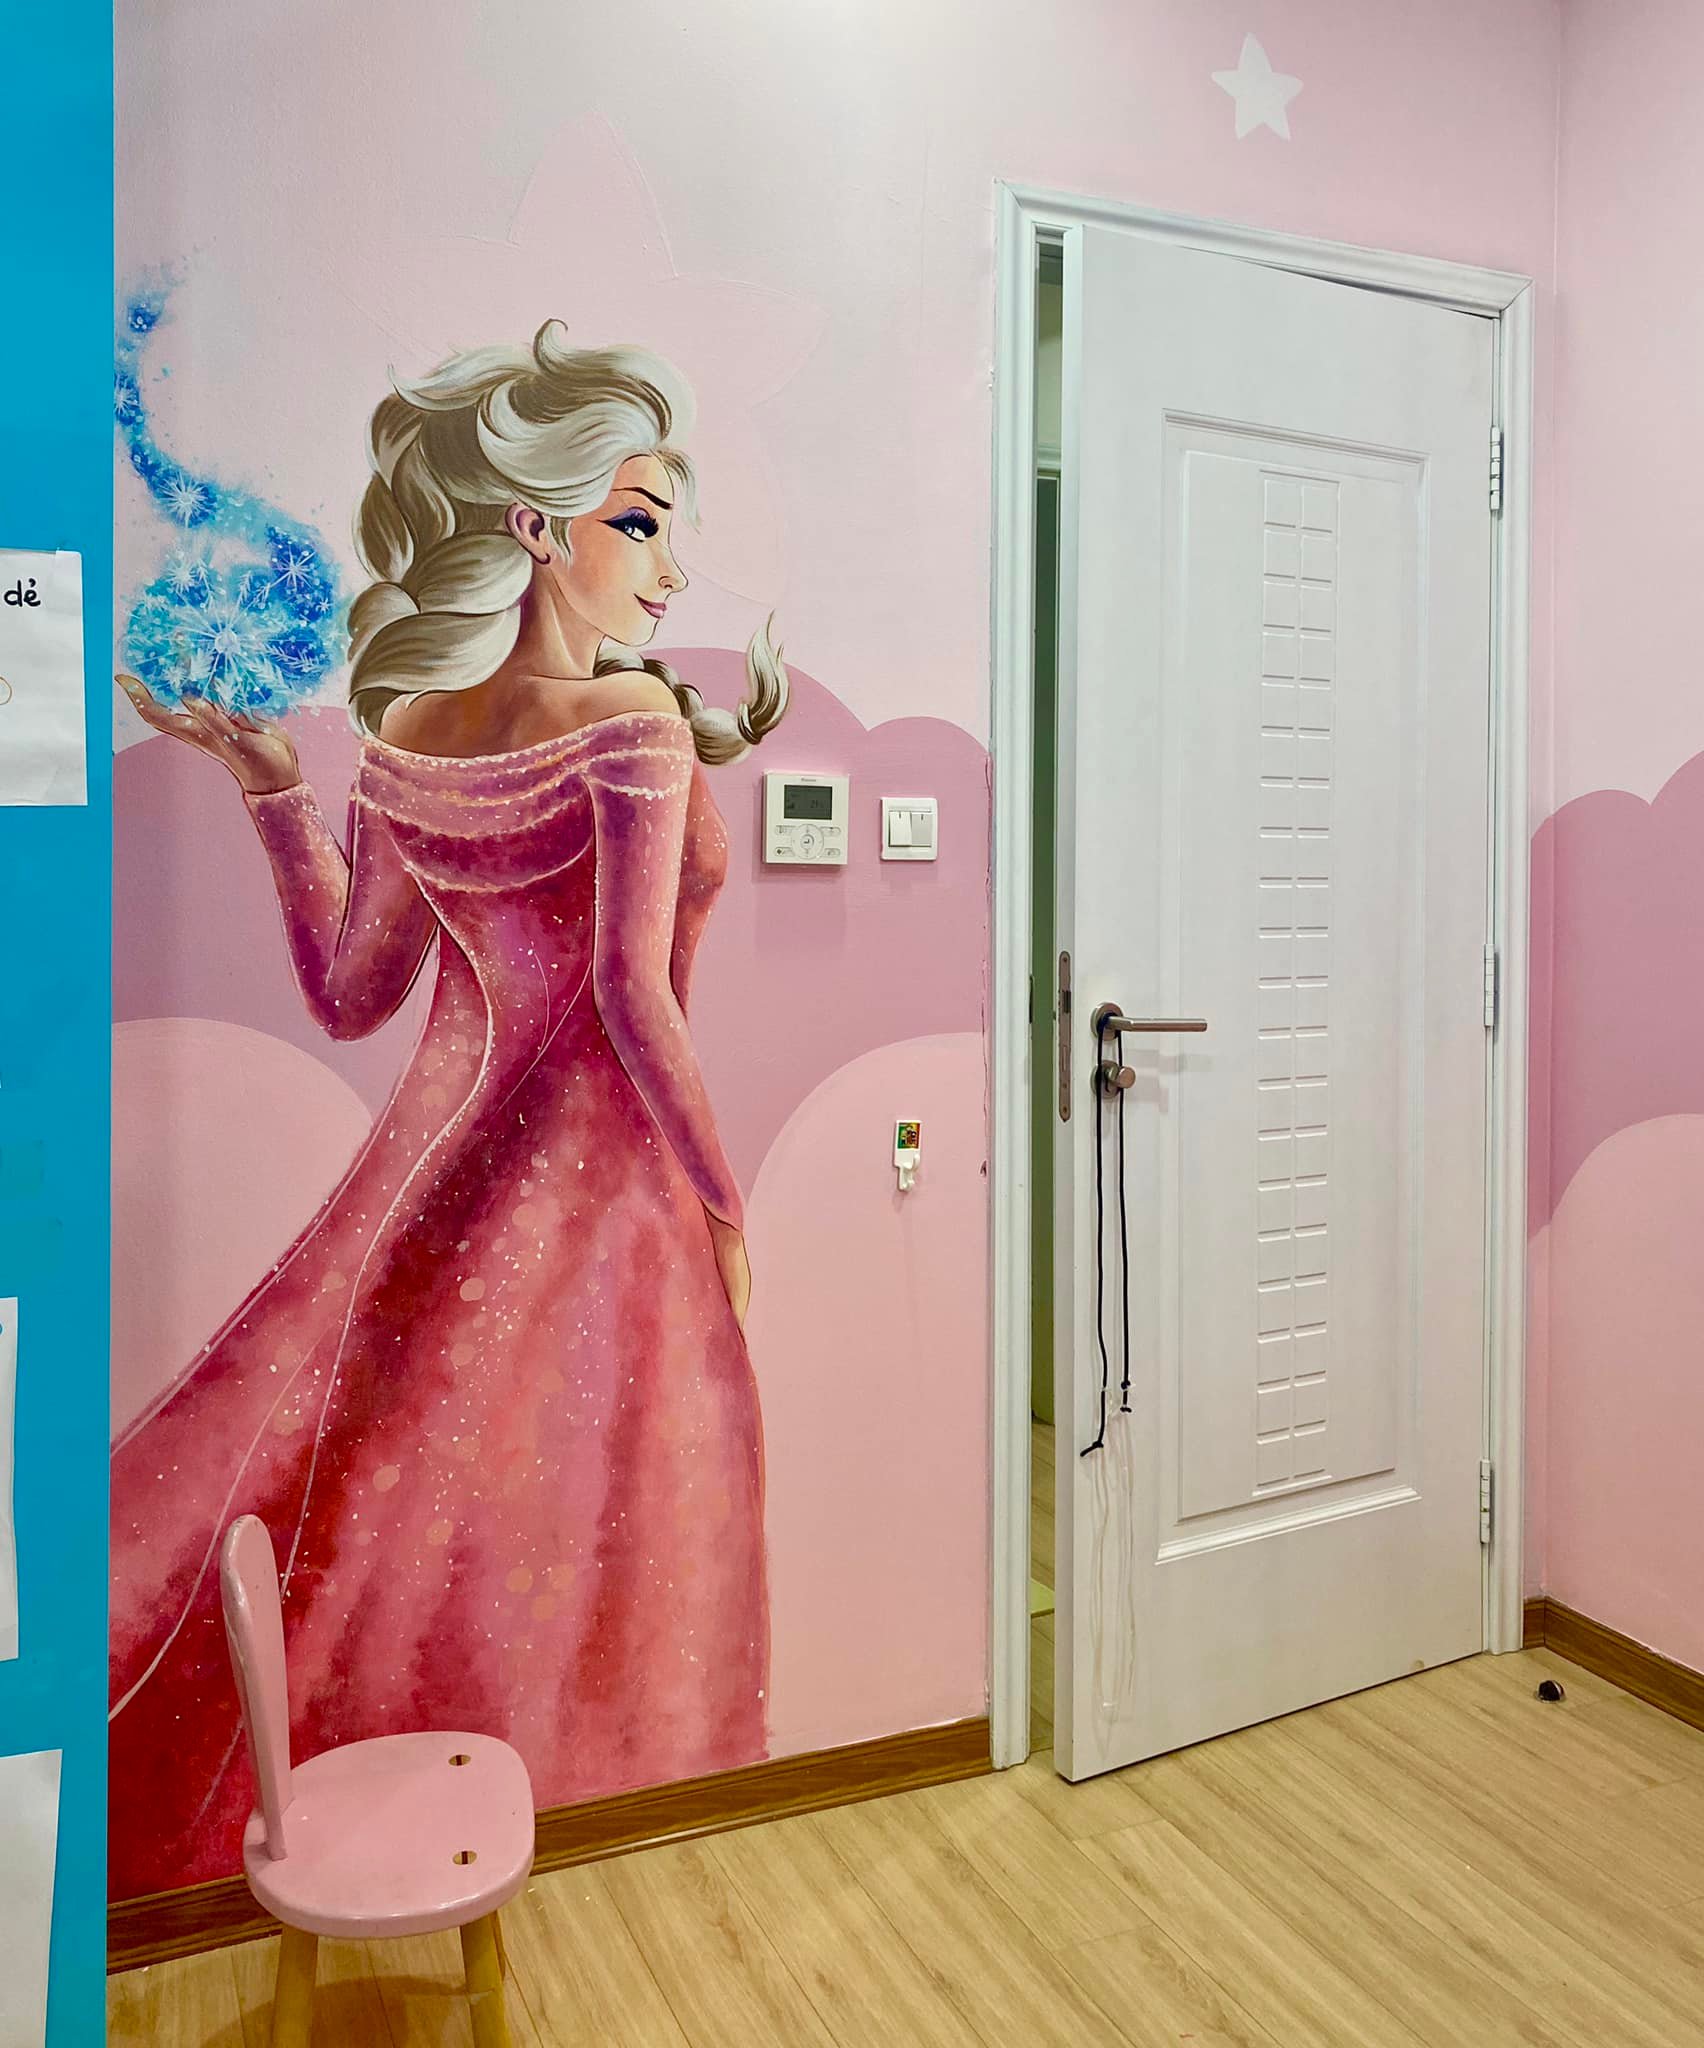 Công chúa Elsa trong màu hồng sẻ làm mê hoặc các bé gái với vẻ đẹp cổ tích. Bộ tranh tường này đầy màu sắc và sẽ là điểm nhấn cho không gian phòng bé của bạn. Hãy cùng tô màu lên những bông hoa, trái cây và những chi tiết nổi bật khác để tạo nên một tác phẩm thật độc đáo.